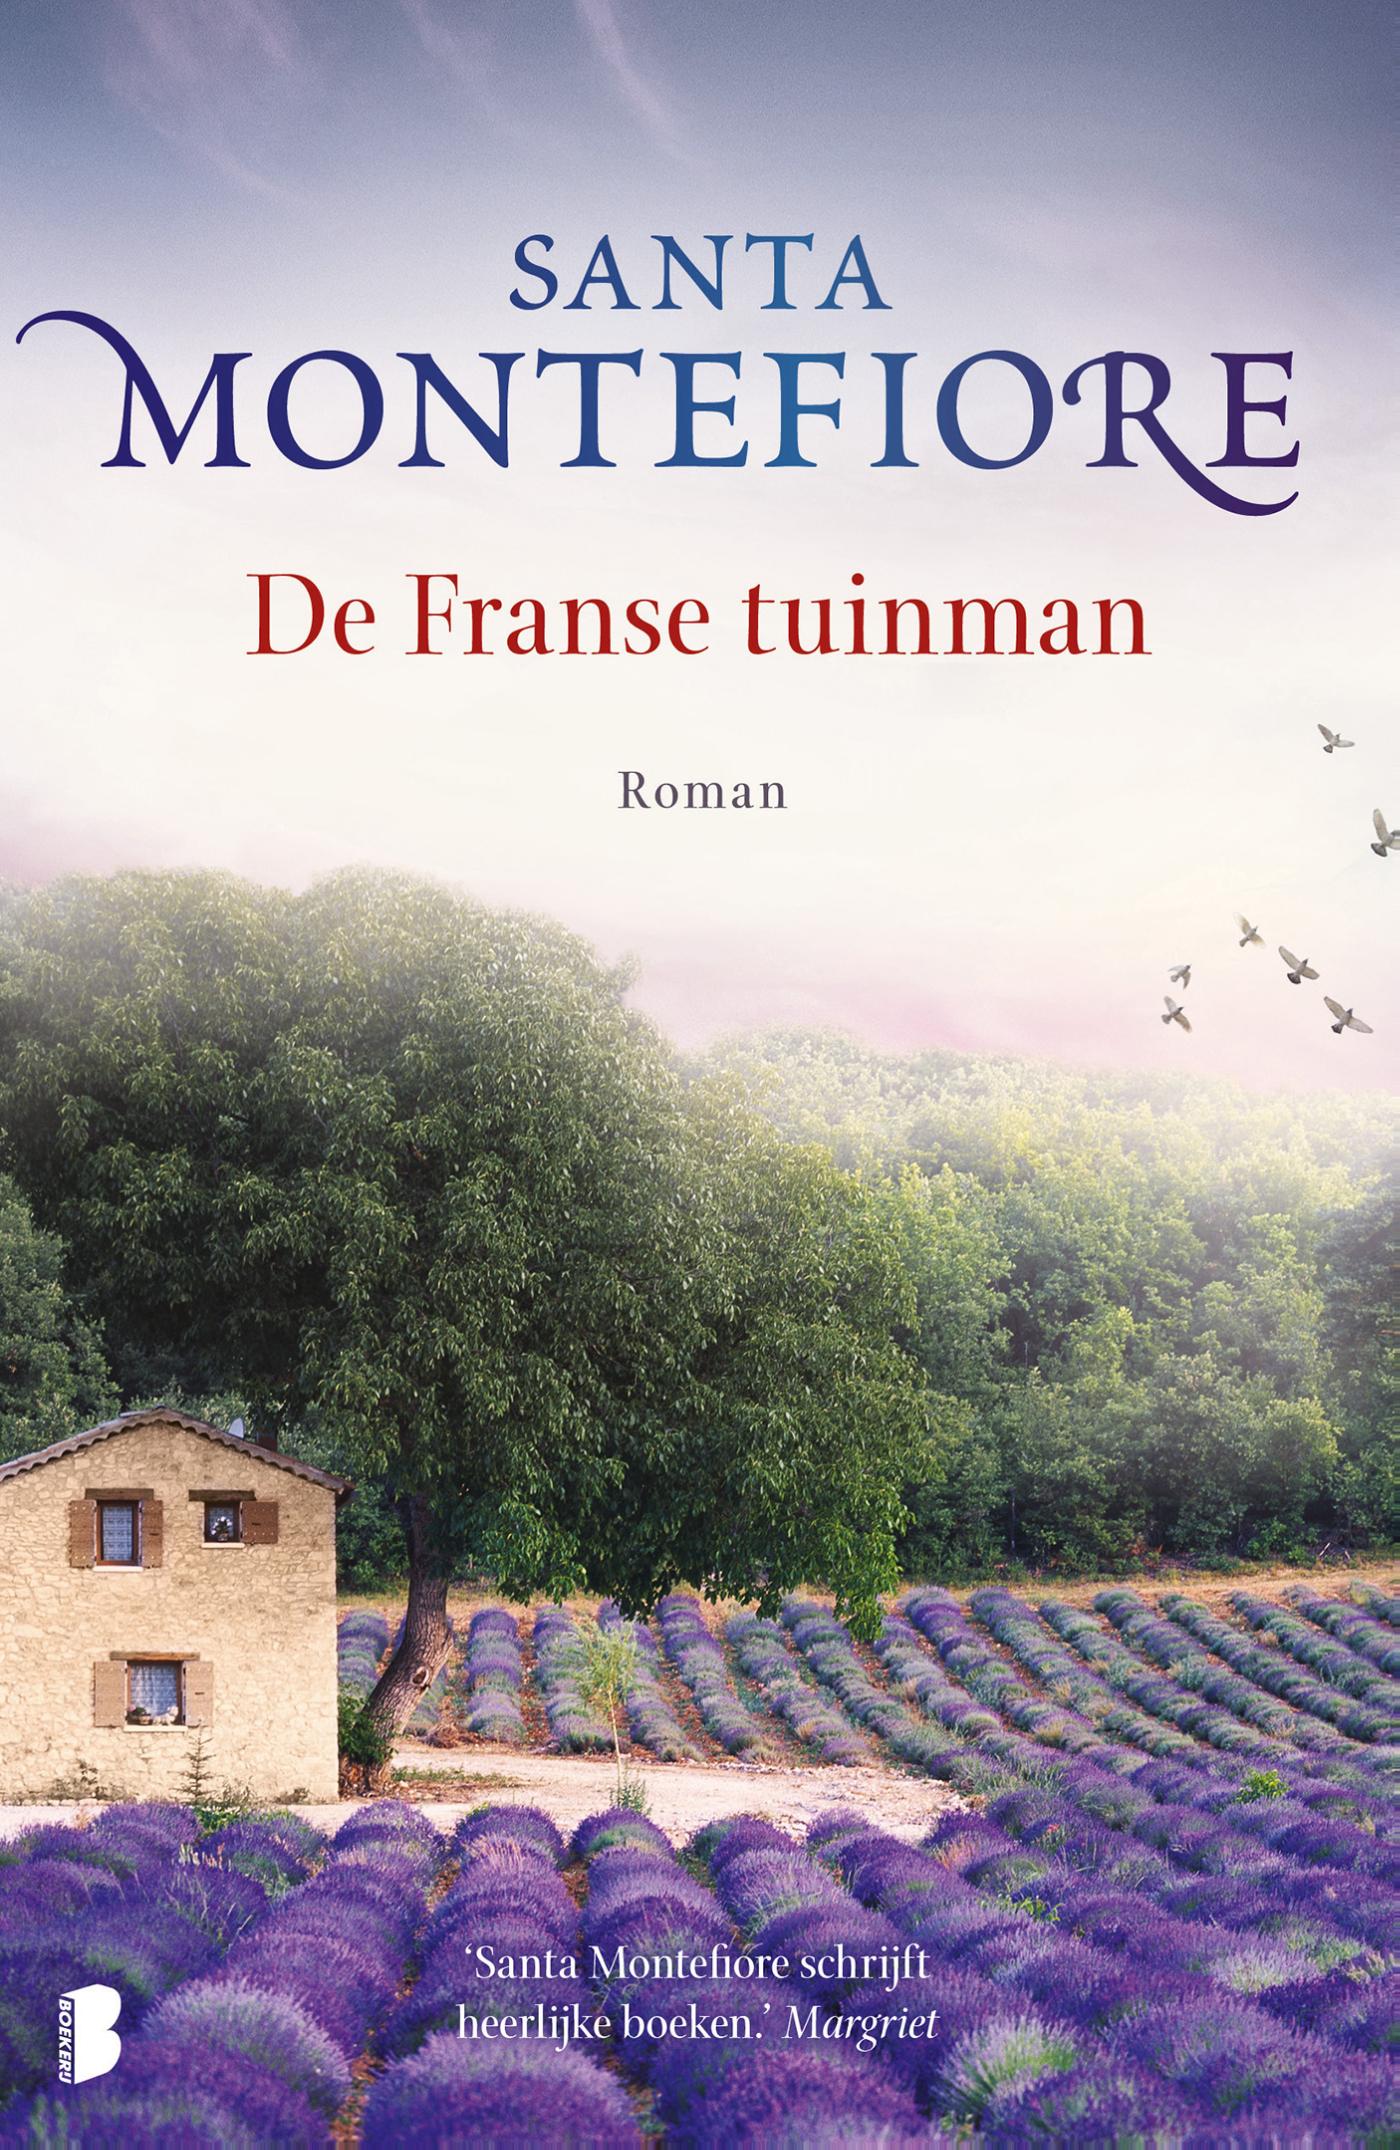 De franse tuinman (Ebook)